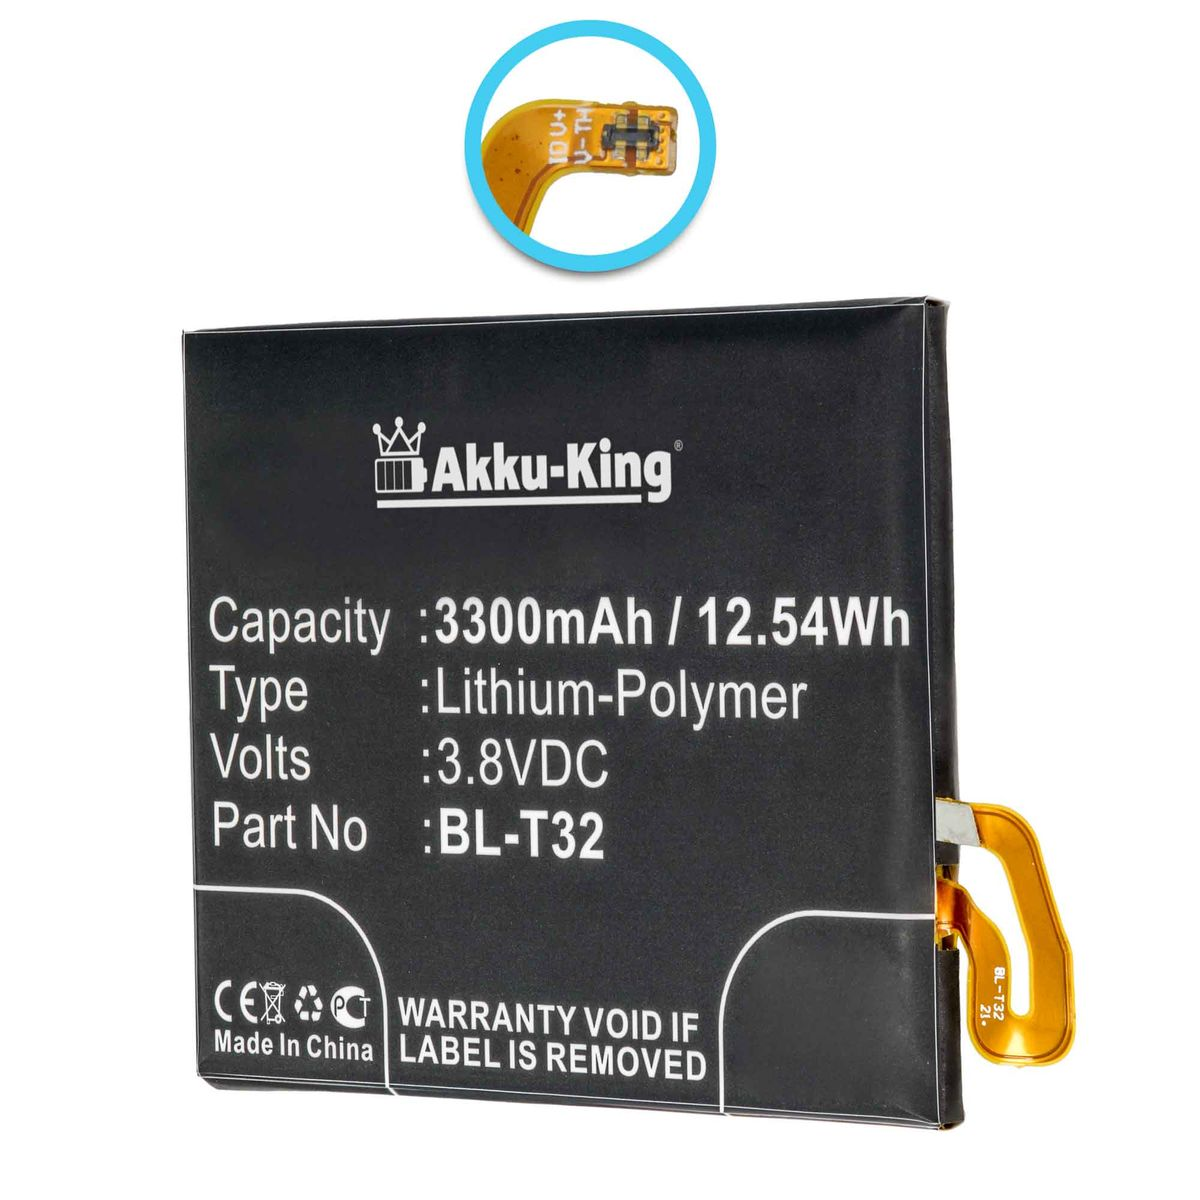 AKKU-KING Akku kompatibel mit BL-T32 Li-Polymer 3300mAh Handy-Akku, 3.8 LG Volt